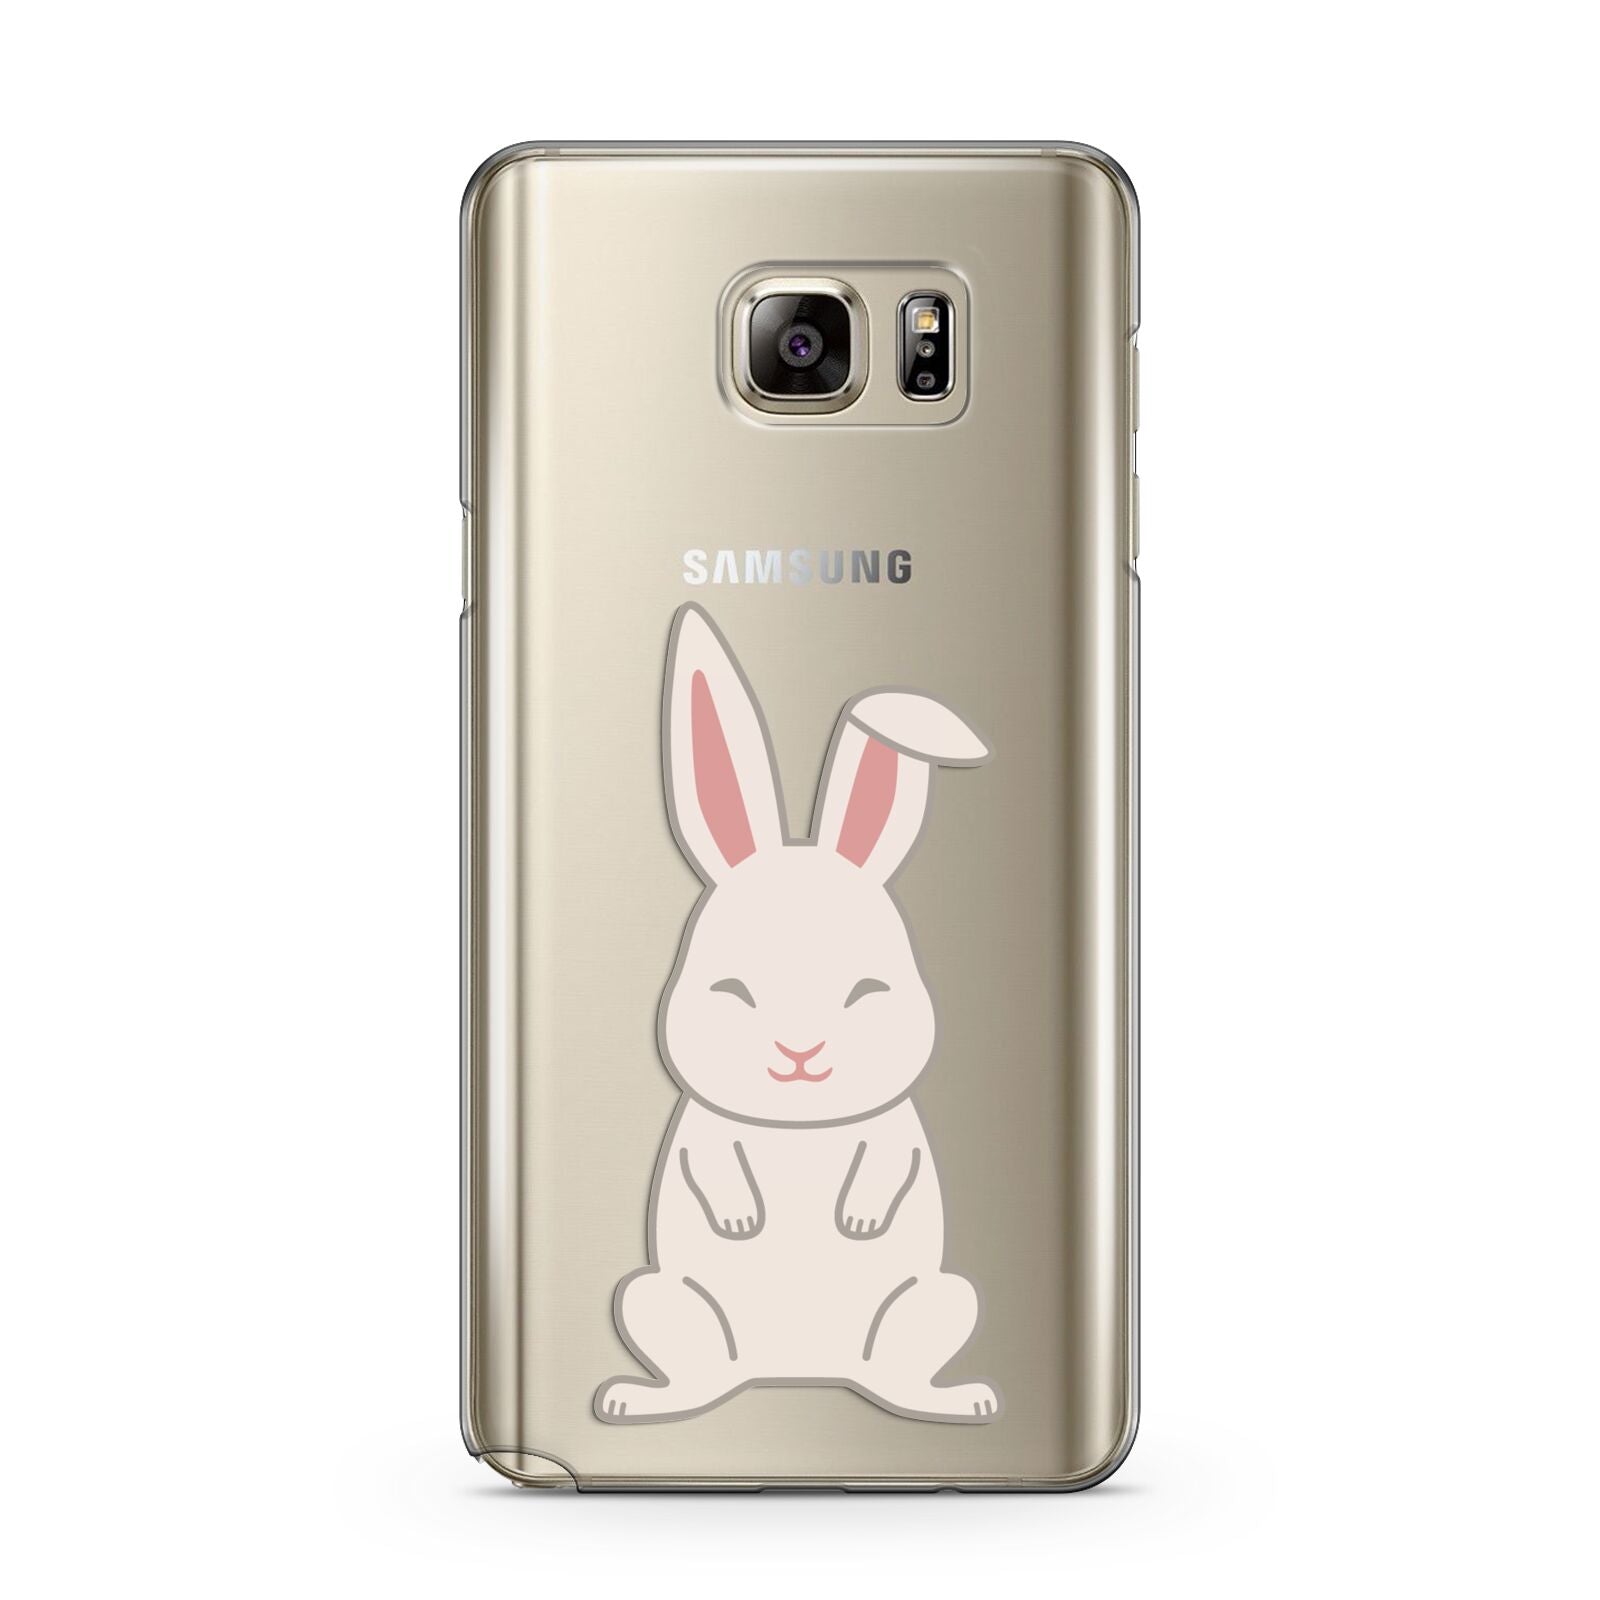 Bunny Samsung Galaxy Note 5 Case